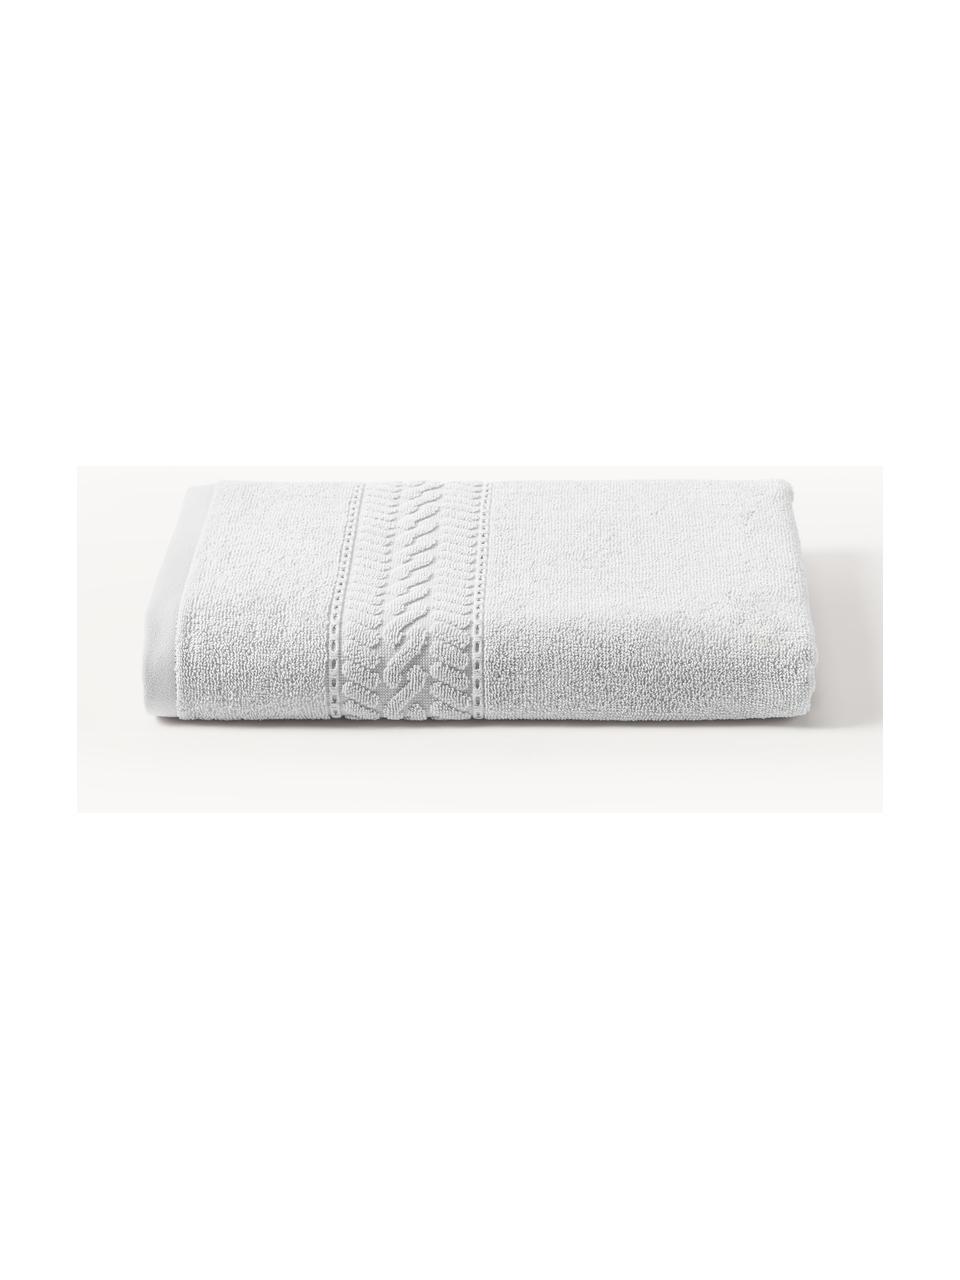 Ręcznik Cordelia, różne rozmiary, 100% bawełna, Jasny szary, Ręcznik, S 50 x D 100 cm, 2 szt.